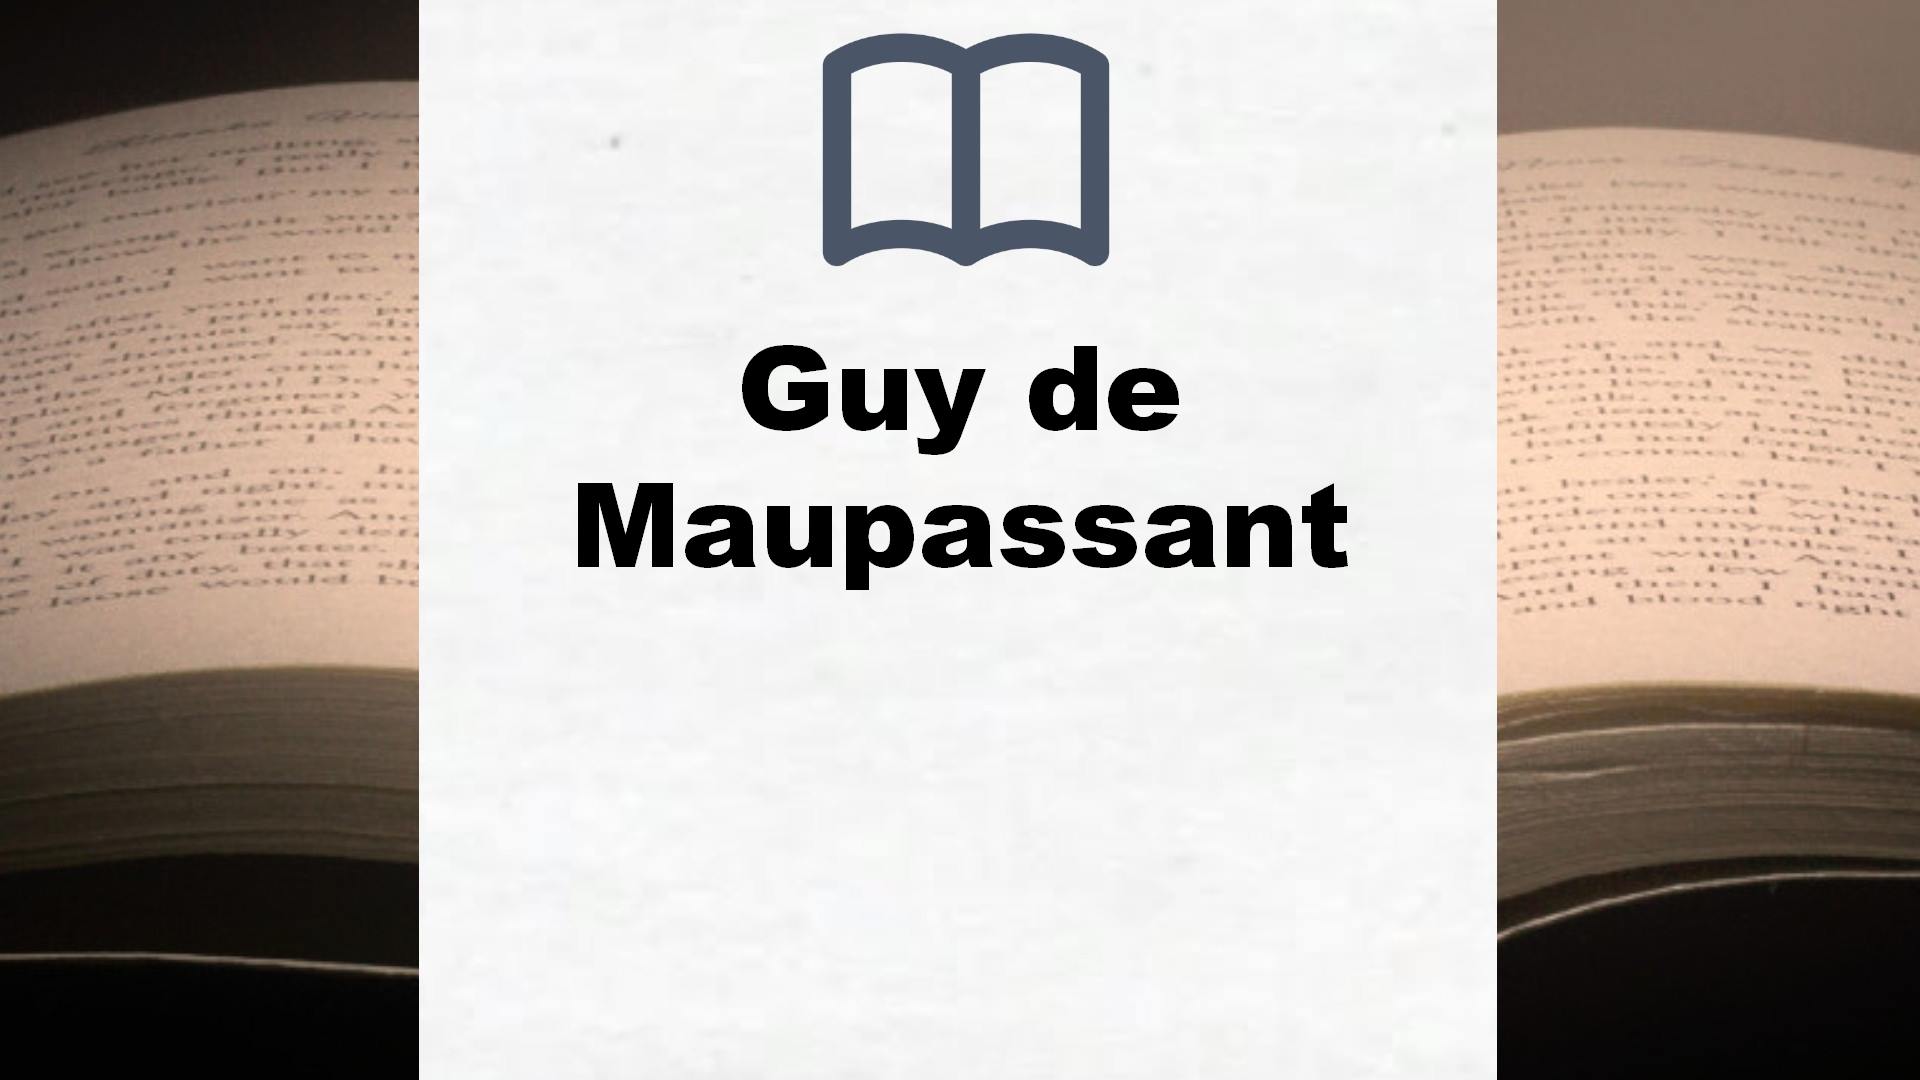 Libros Guy de Maupassant